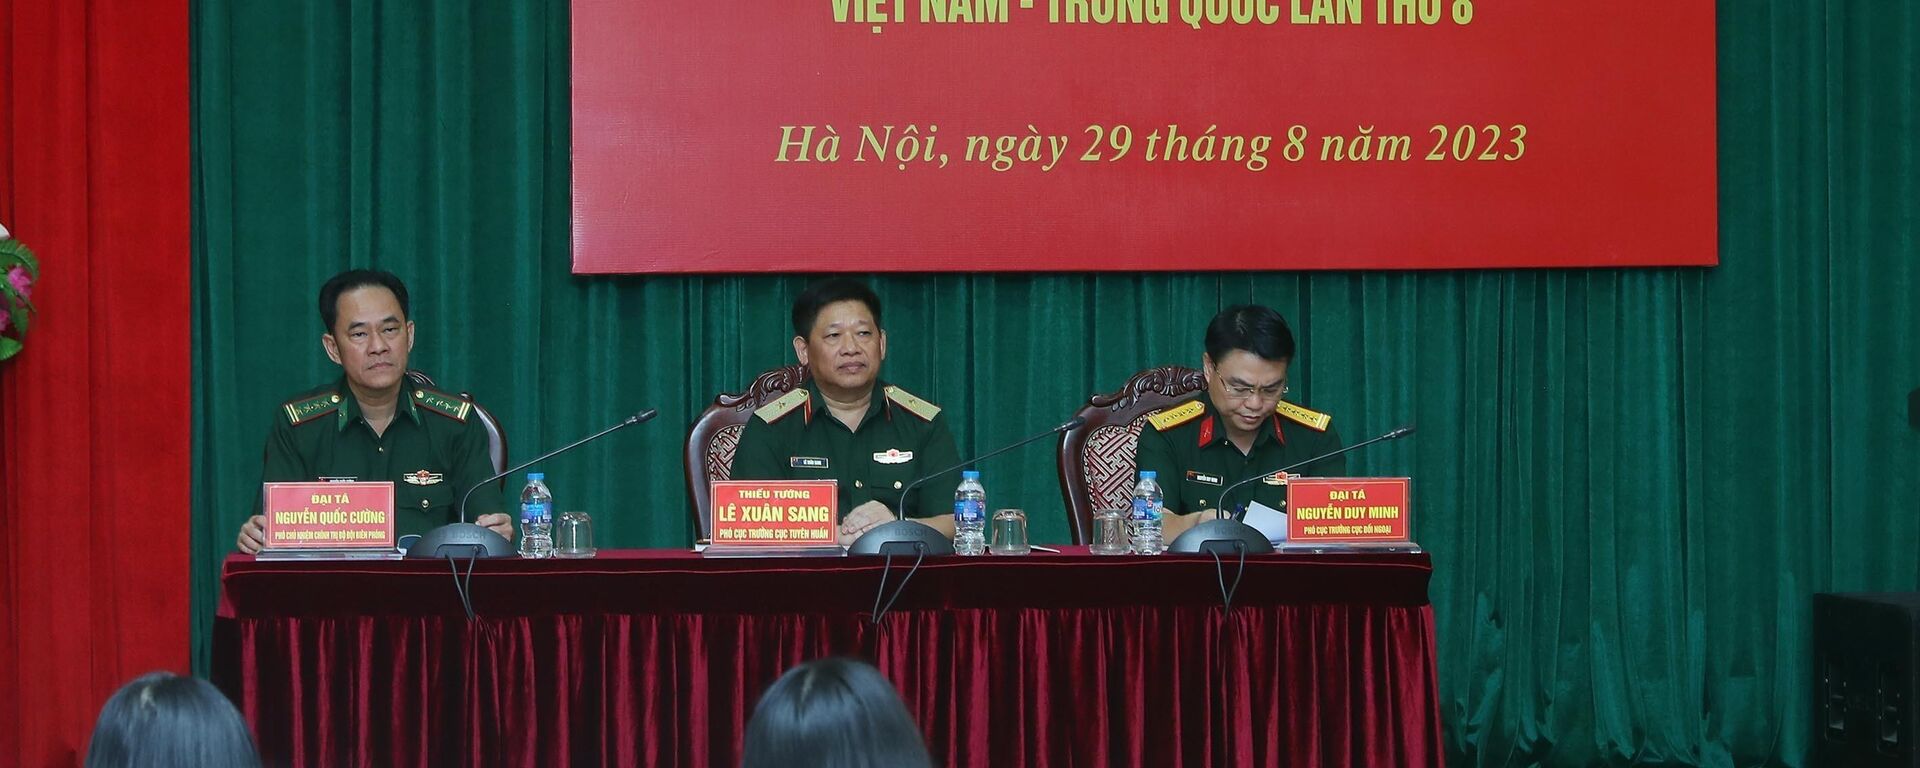 Giao lưu hữu nghị Quốc phòng biên giới Việt - Trung lần thứ 8 diễn ra từ 7-8/9/2023 - Sputnik Việt Nam, 1920, 30.08.2023